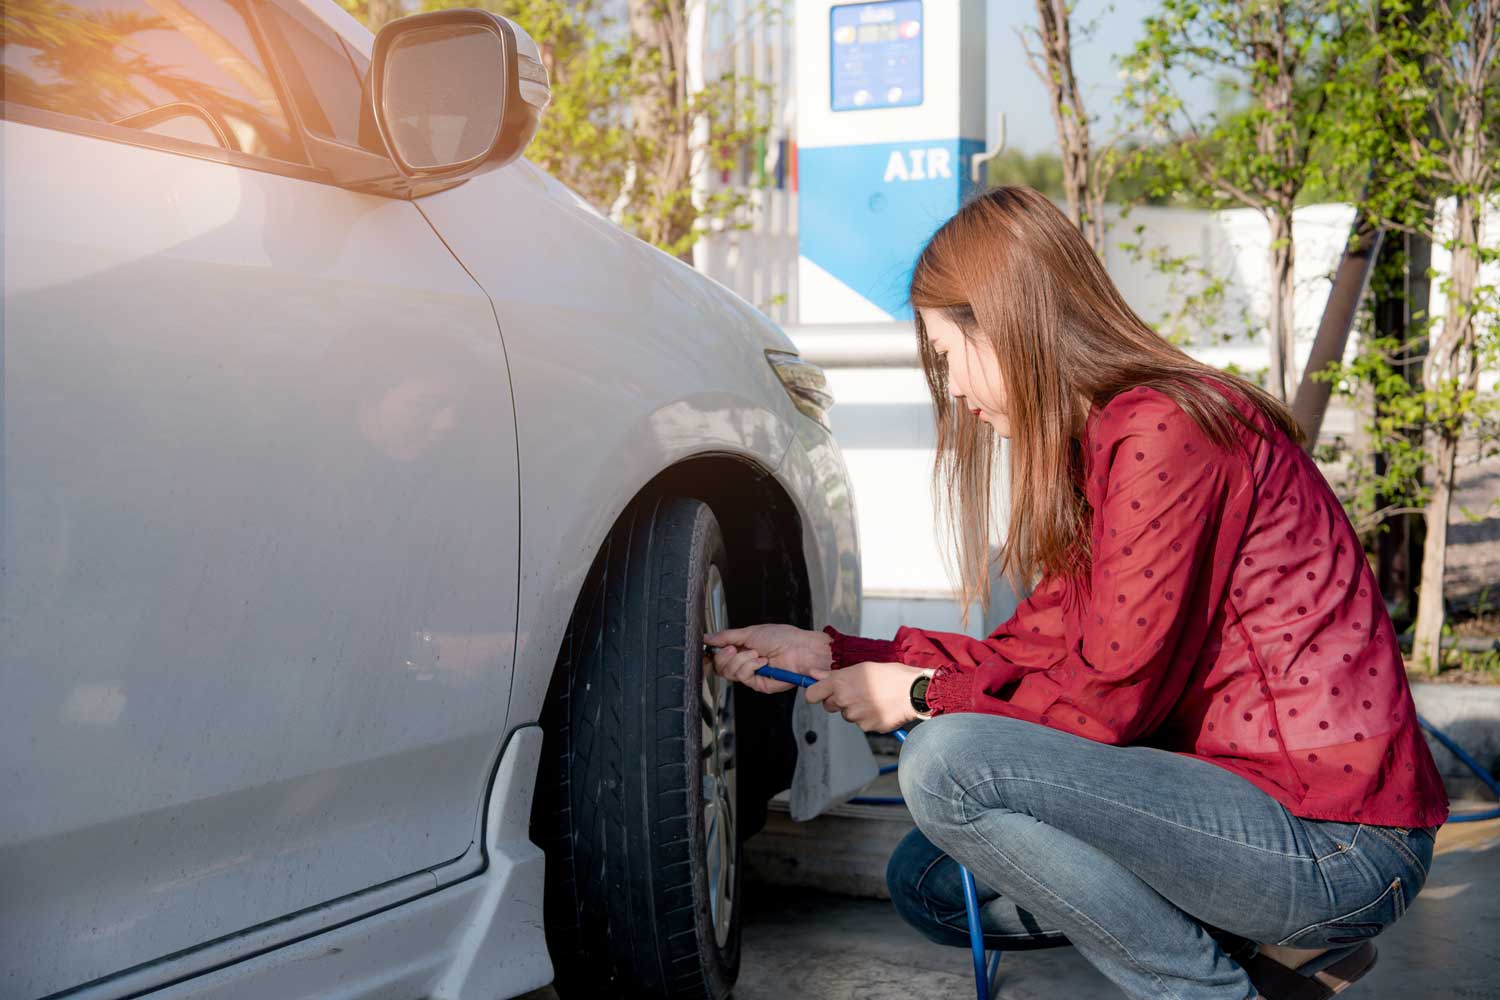 Woman checks tire pressure of car at air pump